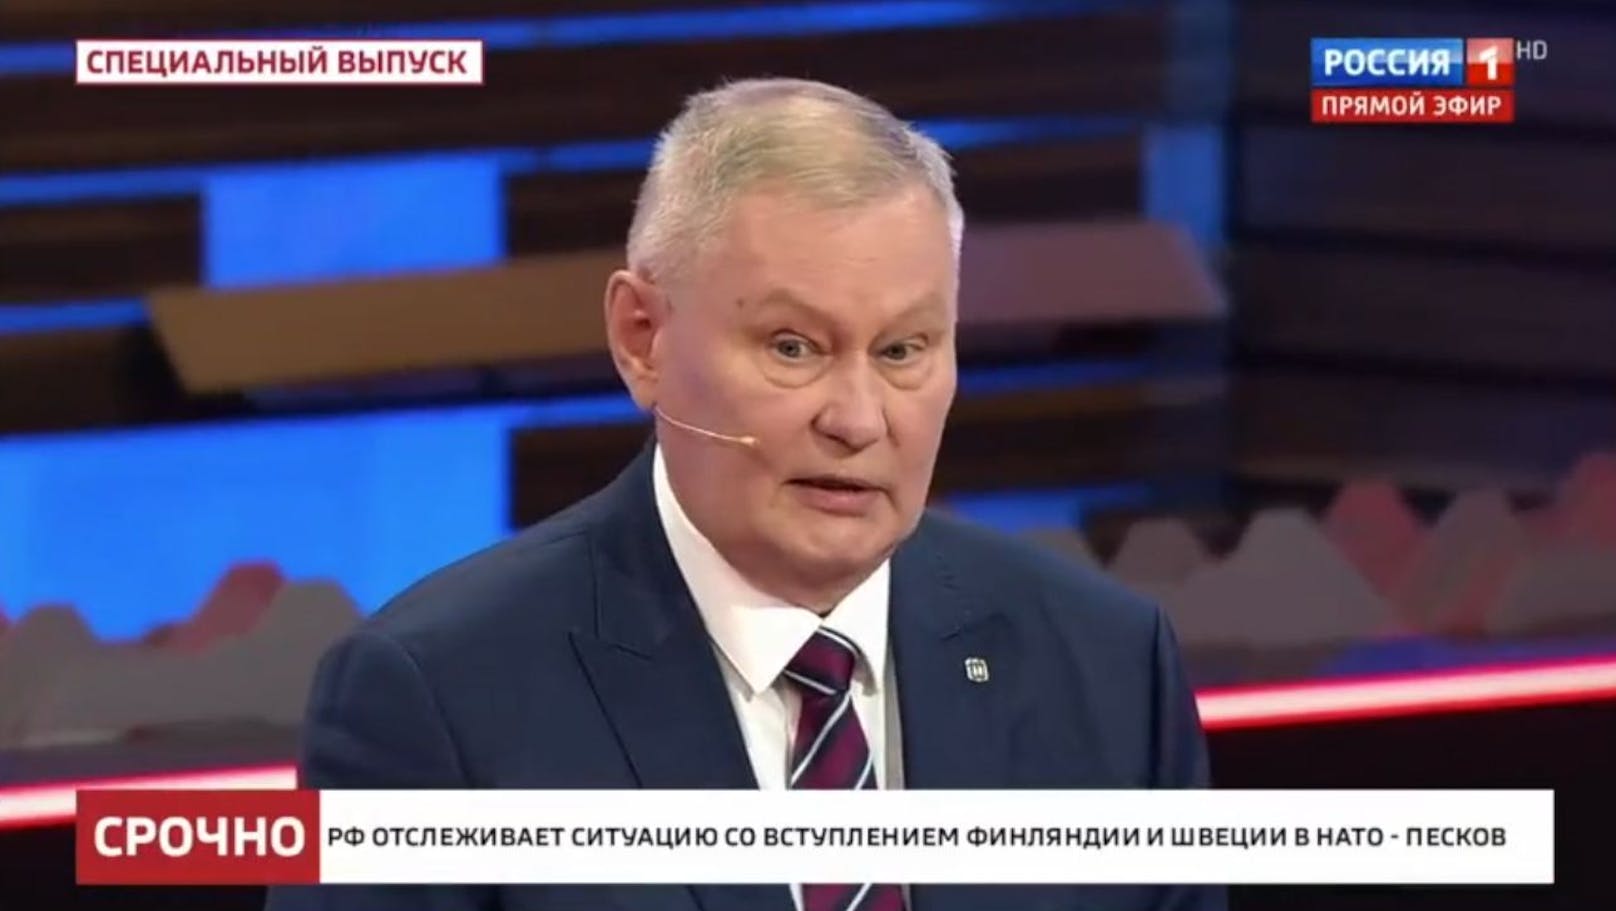 Militäranalyst <strong>Michail Chodarenok</strong> konnte im Russen-TV beinahe ungehindert scharfe Kritik am Überfall auf die Ukraine äußern.